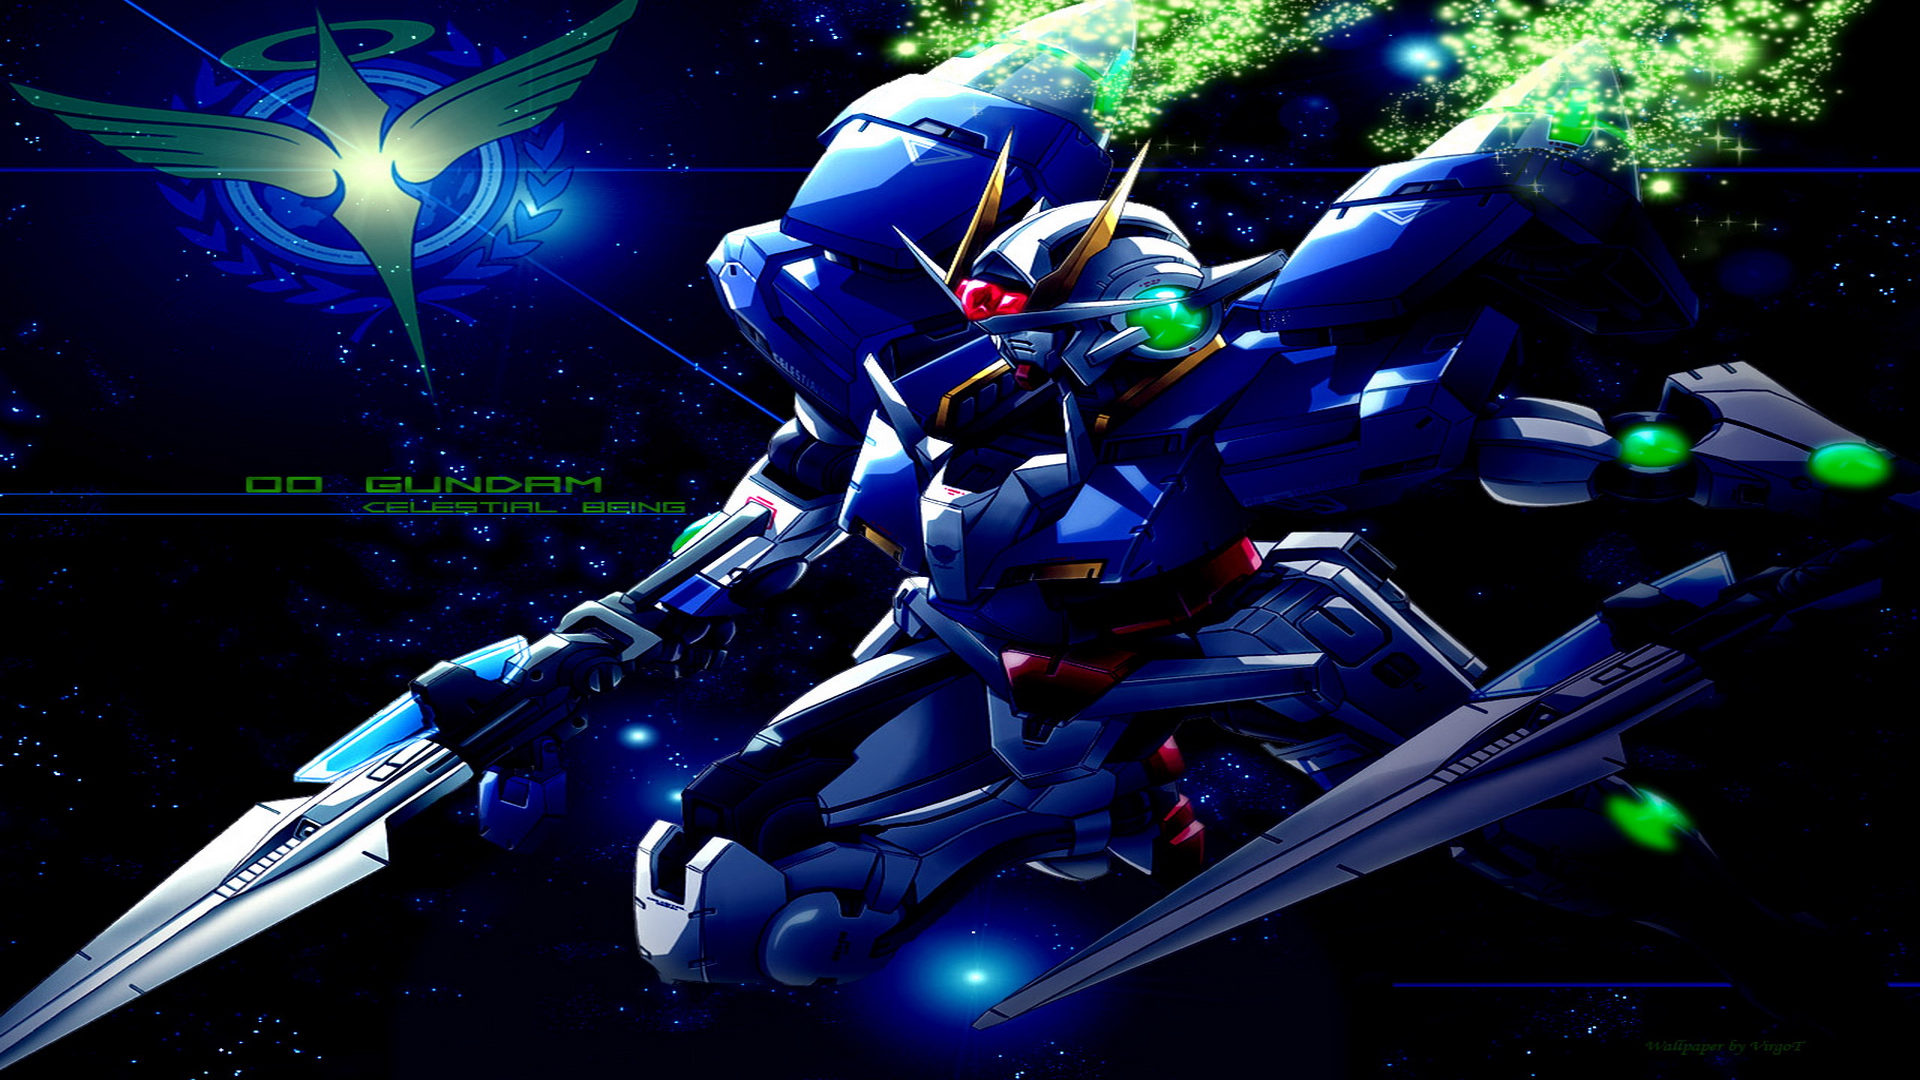 Gundam Wallpapers HD Desktop Wallpapers Gundam Wallpapers 30jpg